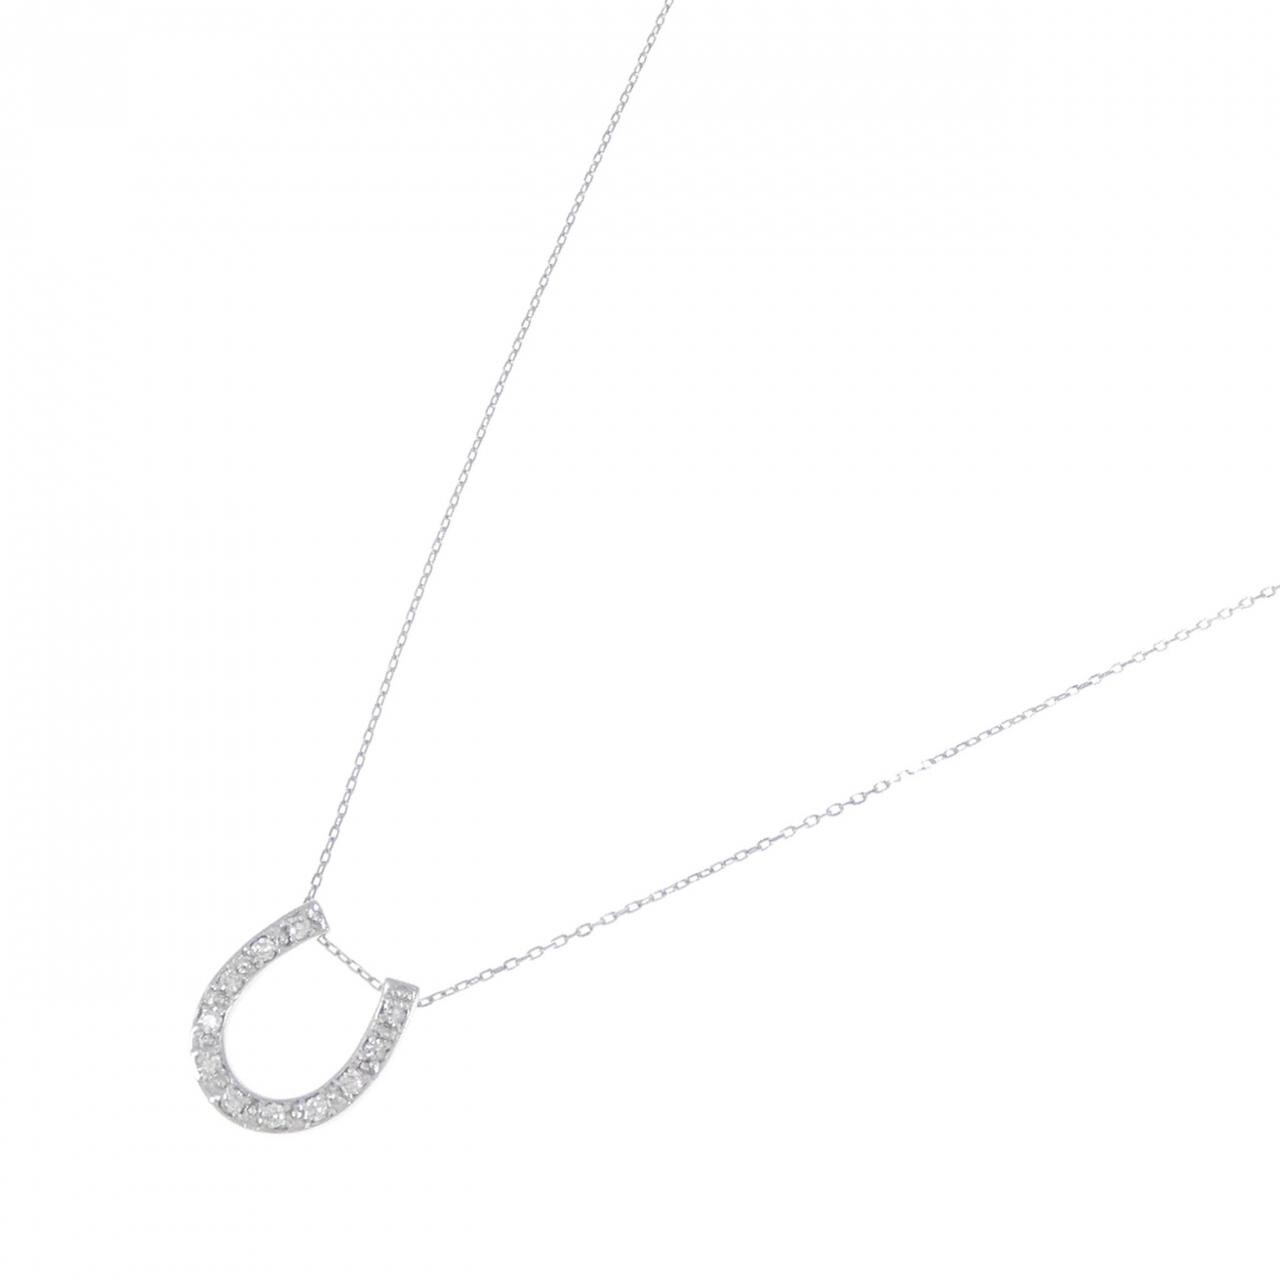 K18WG Horseshoe Diamond Necklace 0.10CT